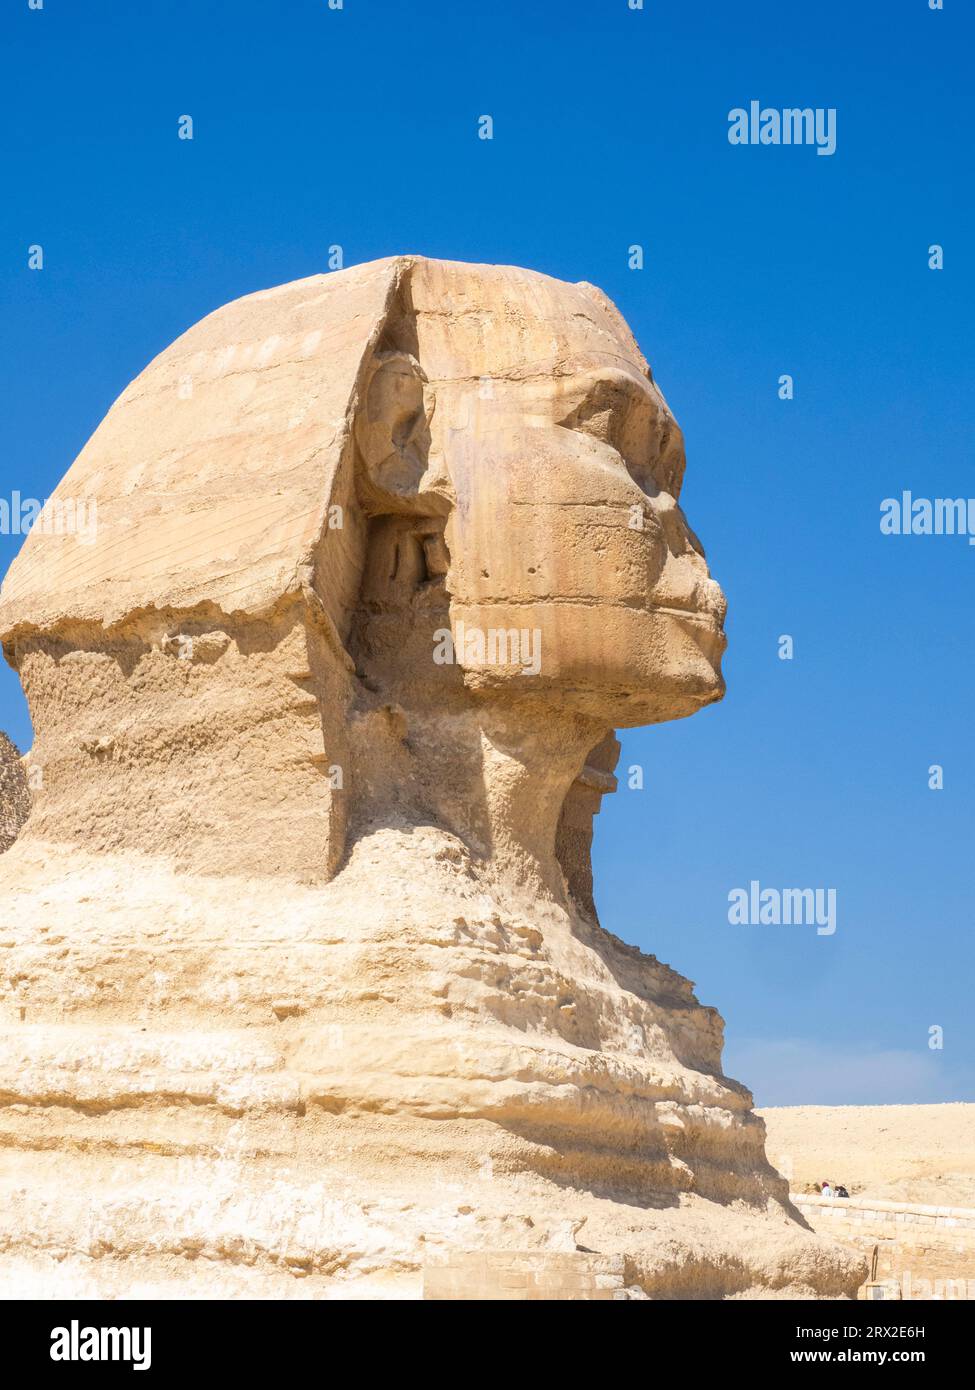 Le Grand Sphinx de Gizeh près de la Grande Pyramide de Gizeh, la plus ancienne des sept merveilles du monde, près du Caire, Egypte Afrique Banque D'Images